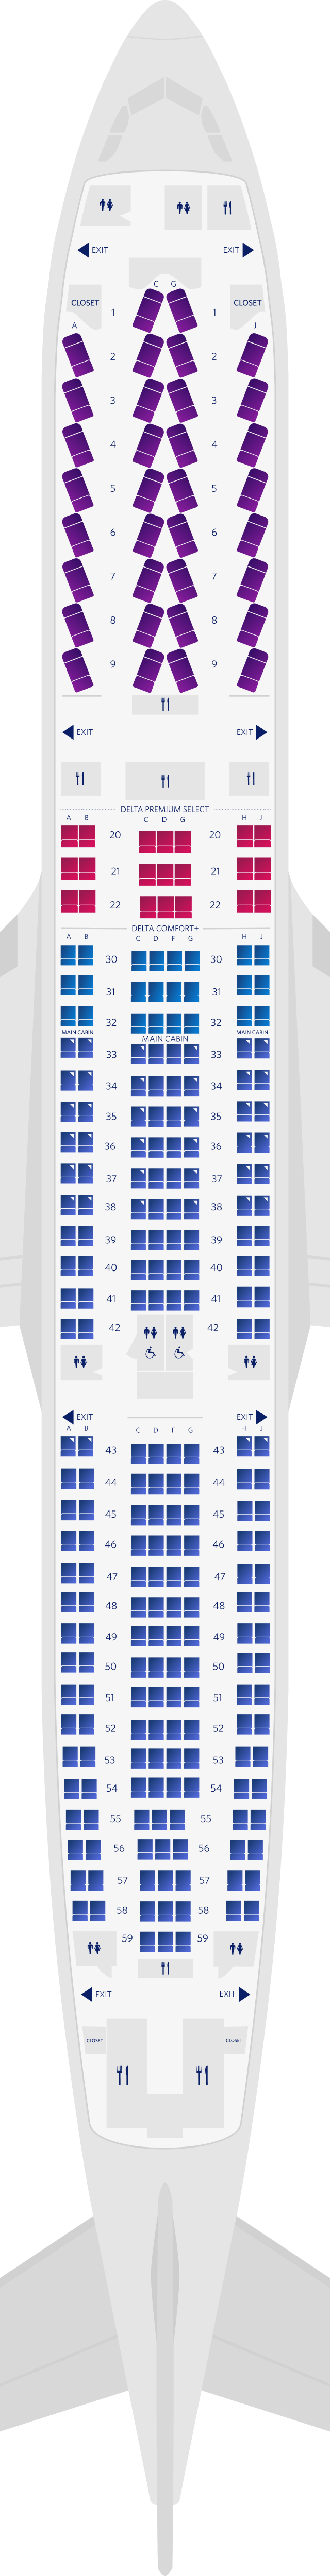 空客A330-300 4机舱座位图(3M3)